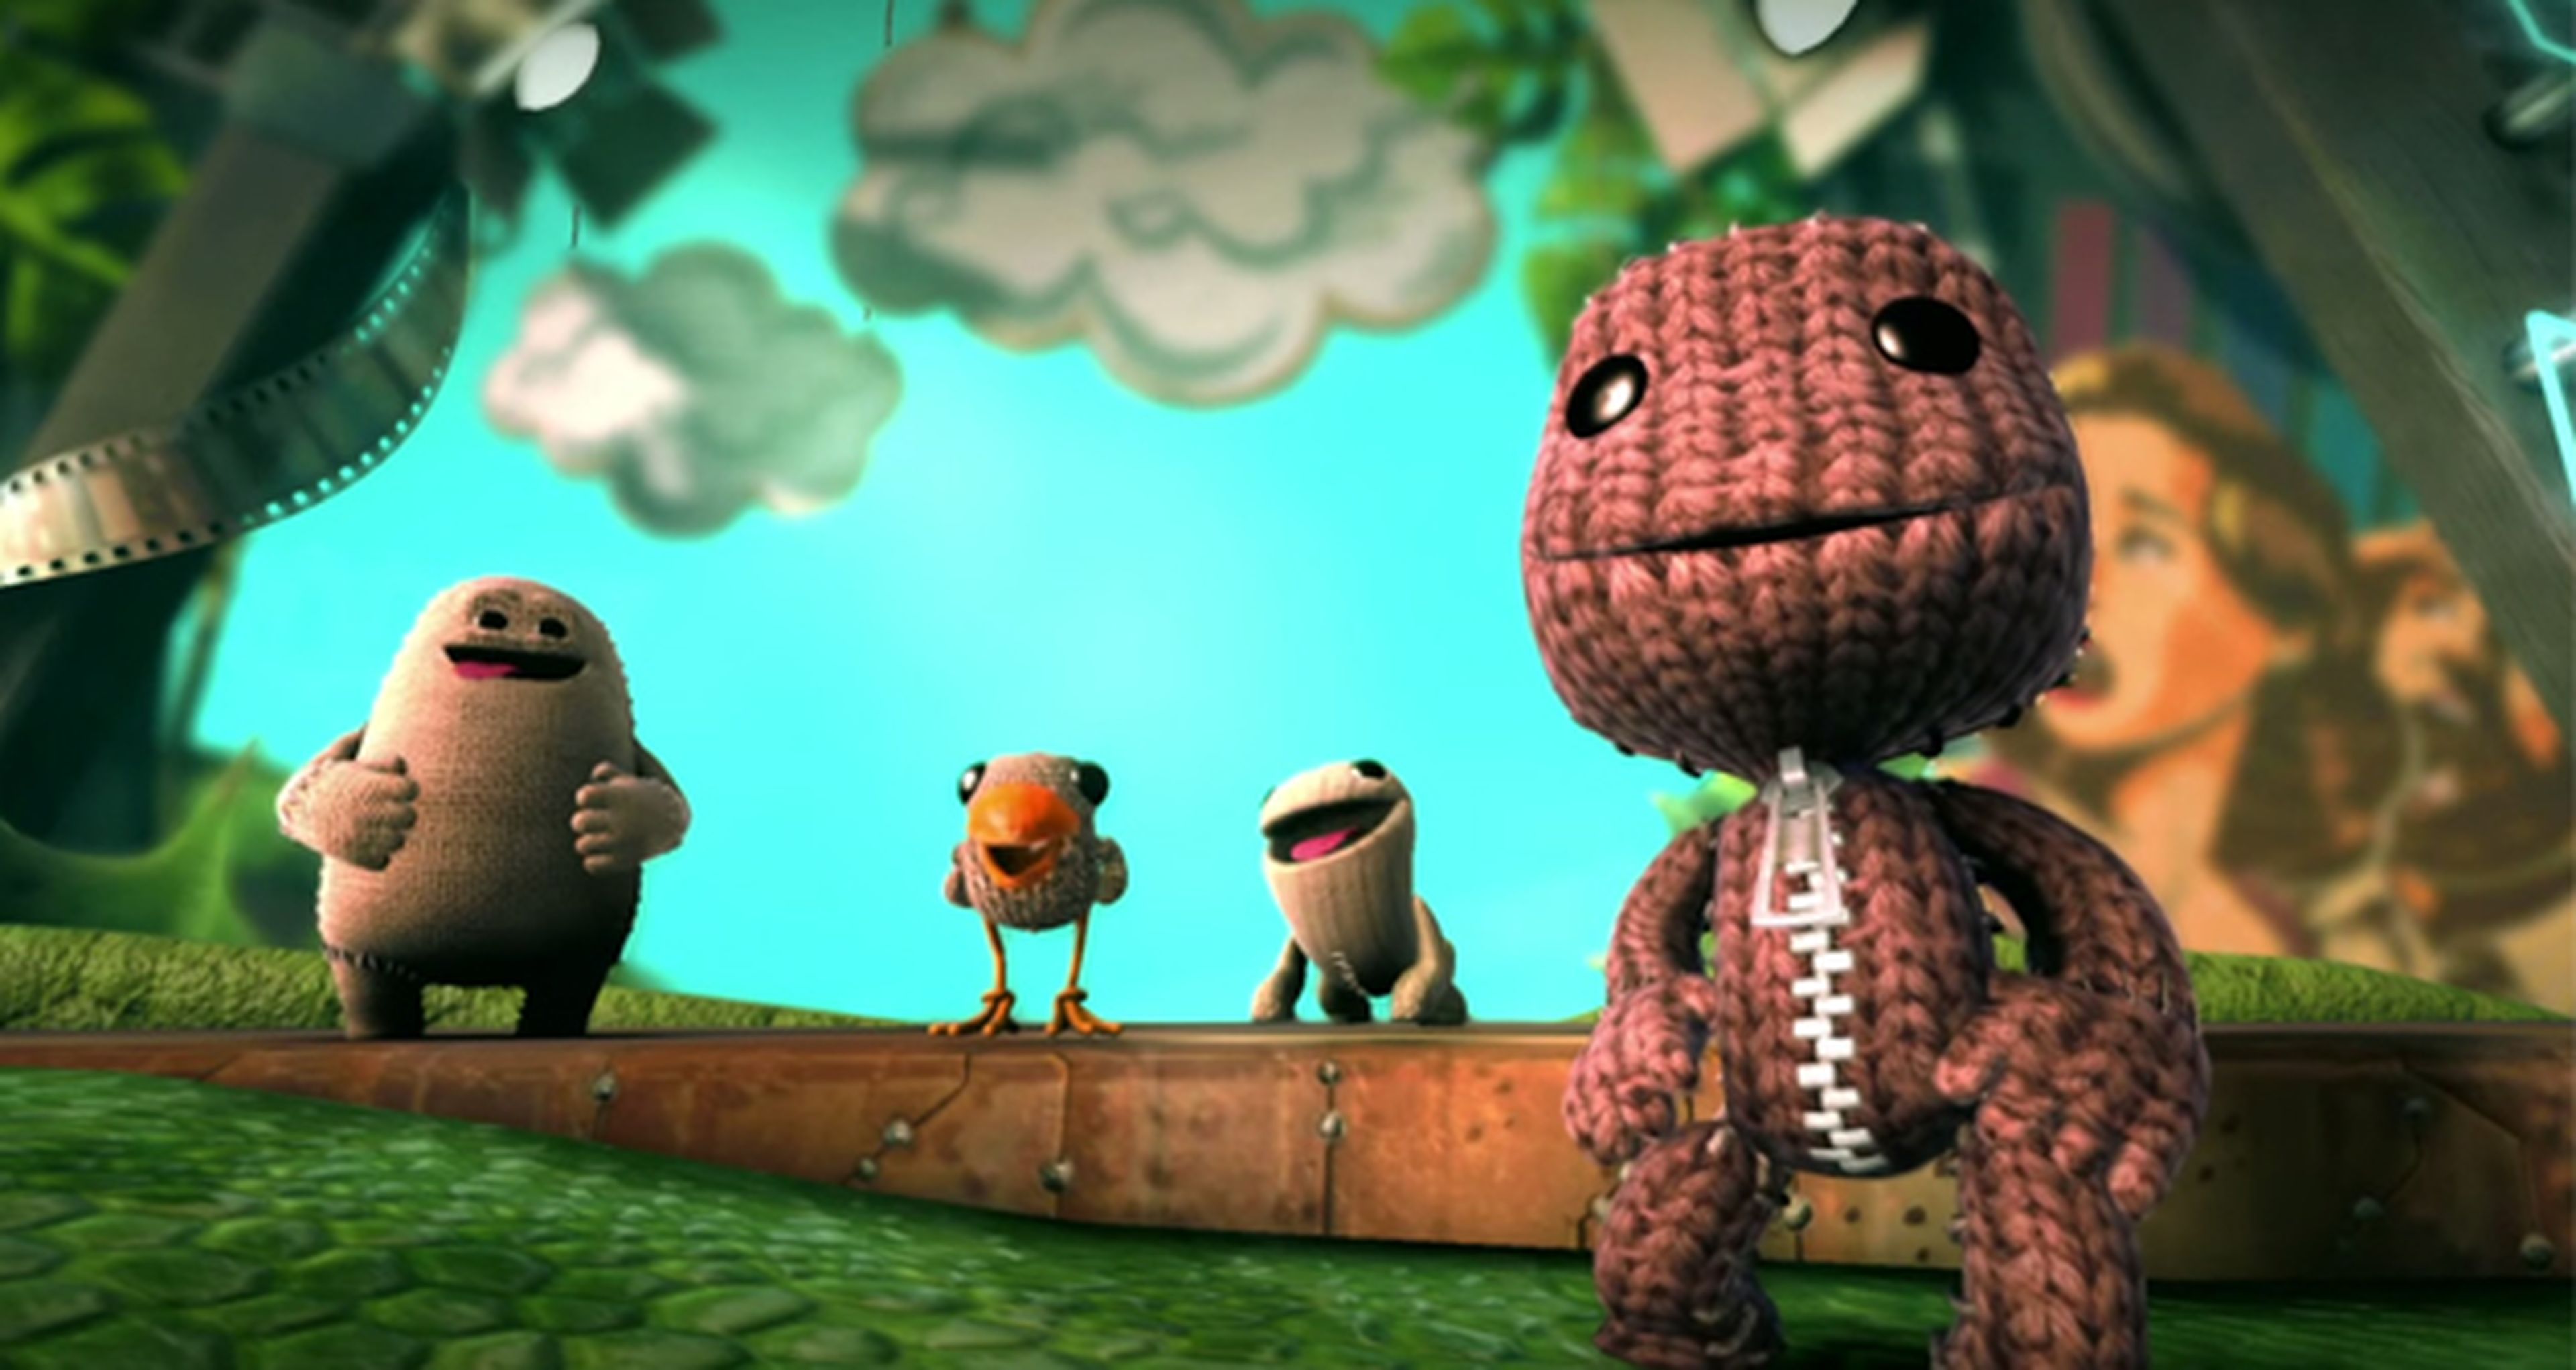 Más detalles de los personajes de LittleBigPlanet 3